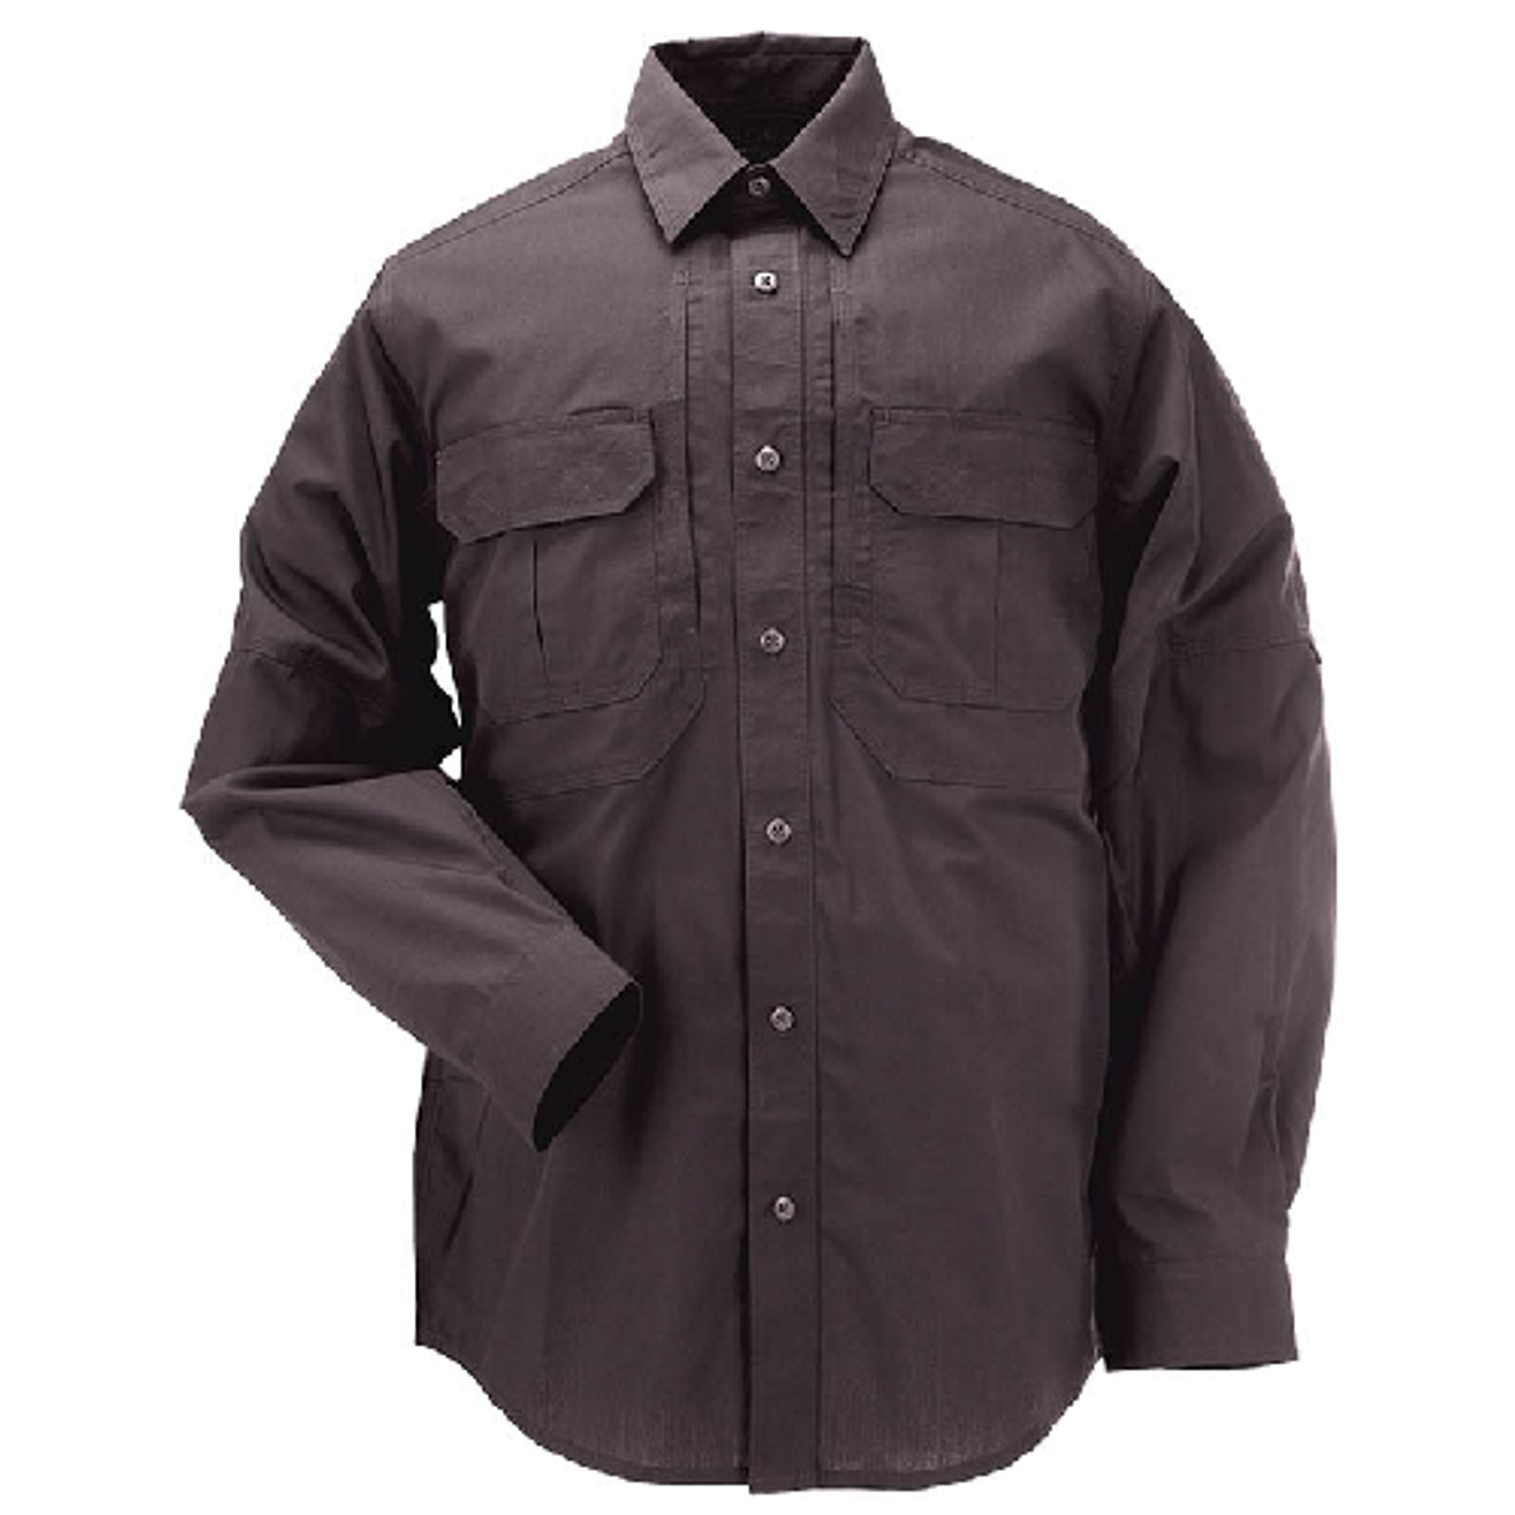 Taclite Pro L/s Shirt - KR5-721750182X